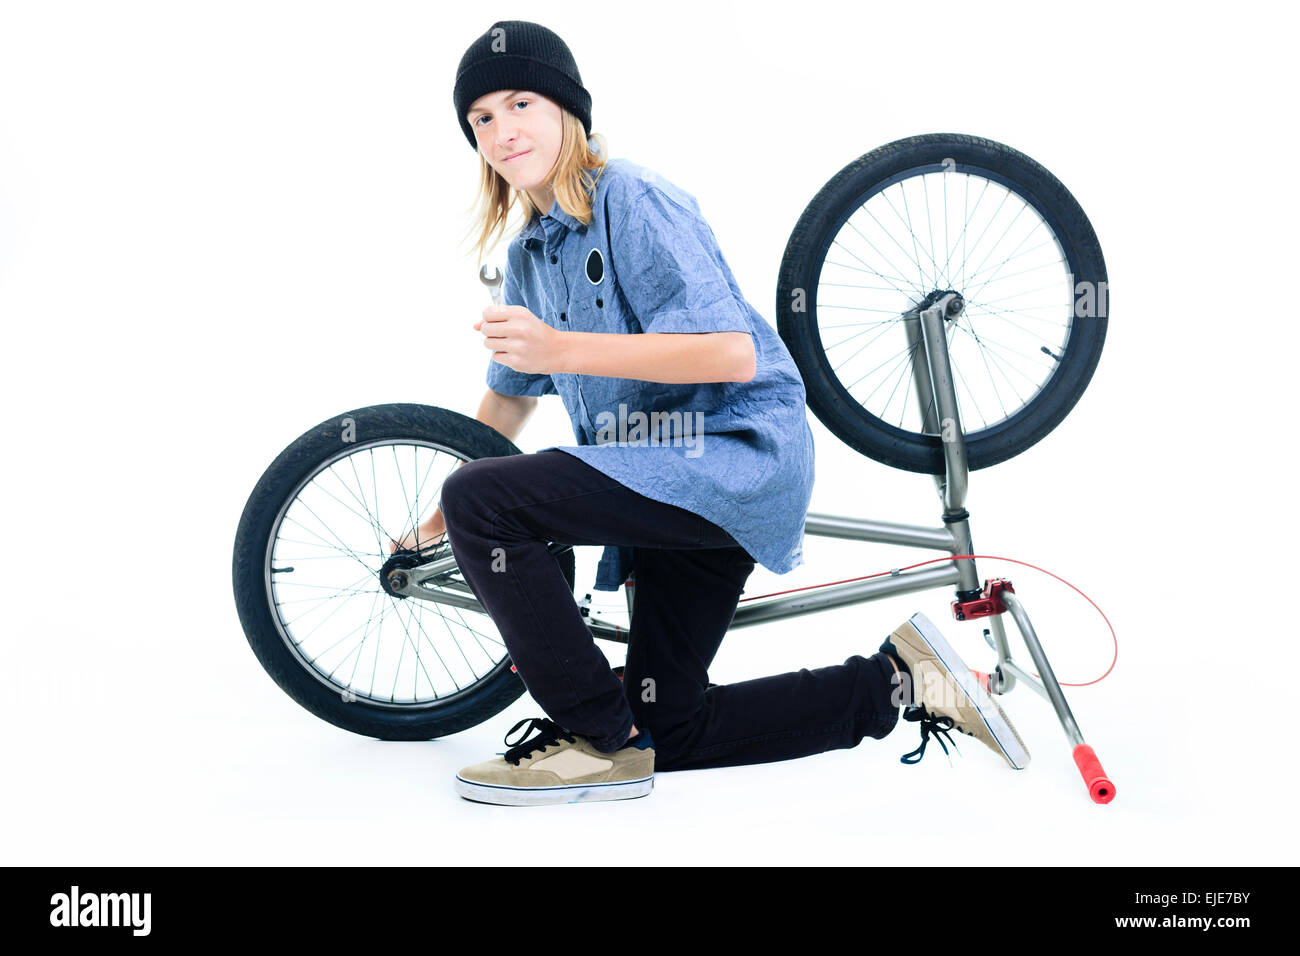 Bicycle Boy on BMX bike isolated on white Stock Photo